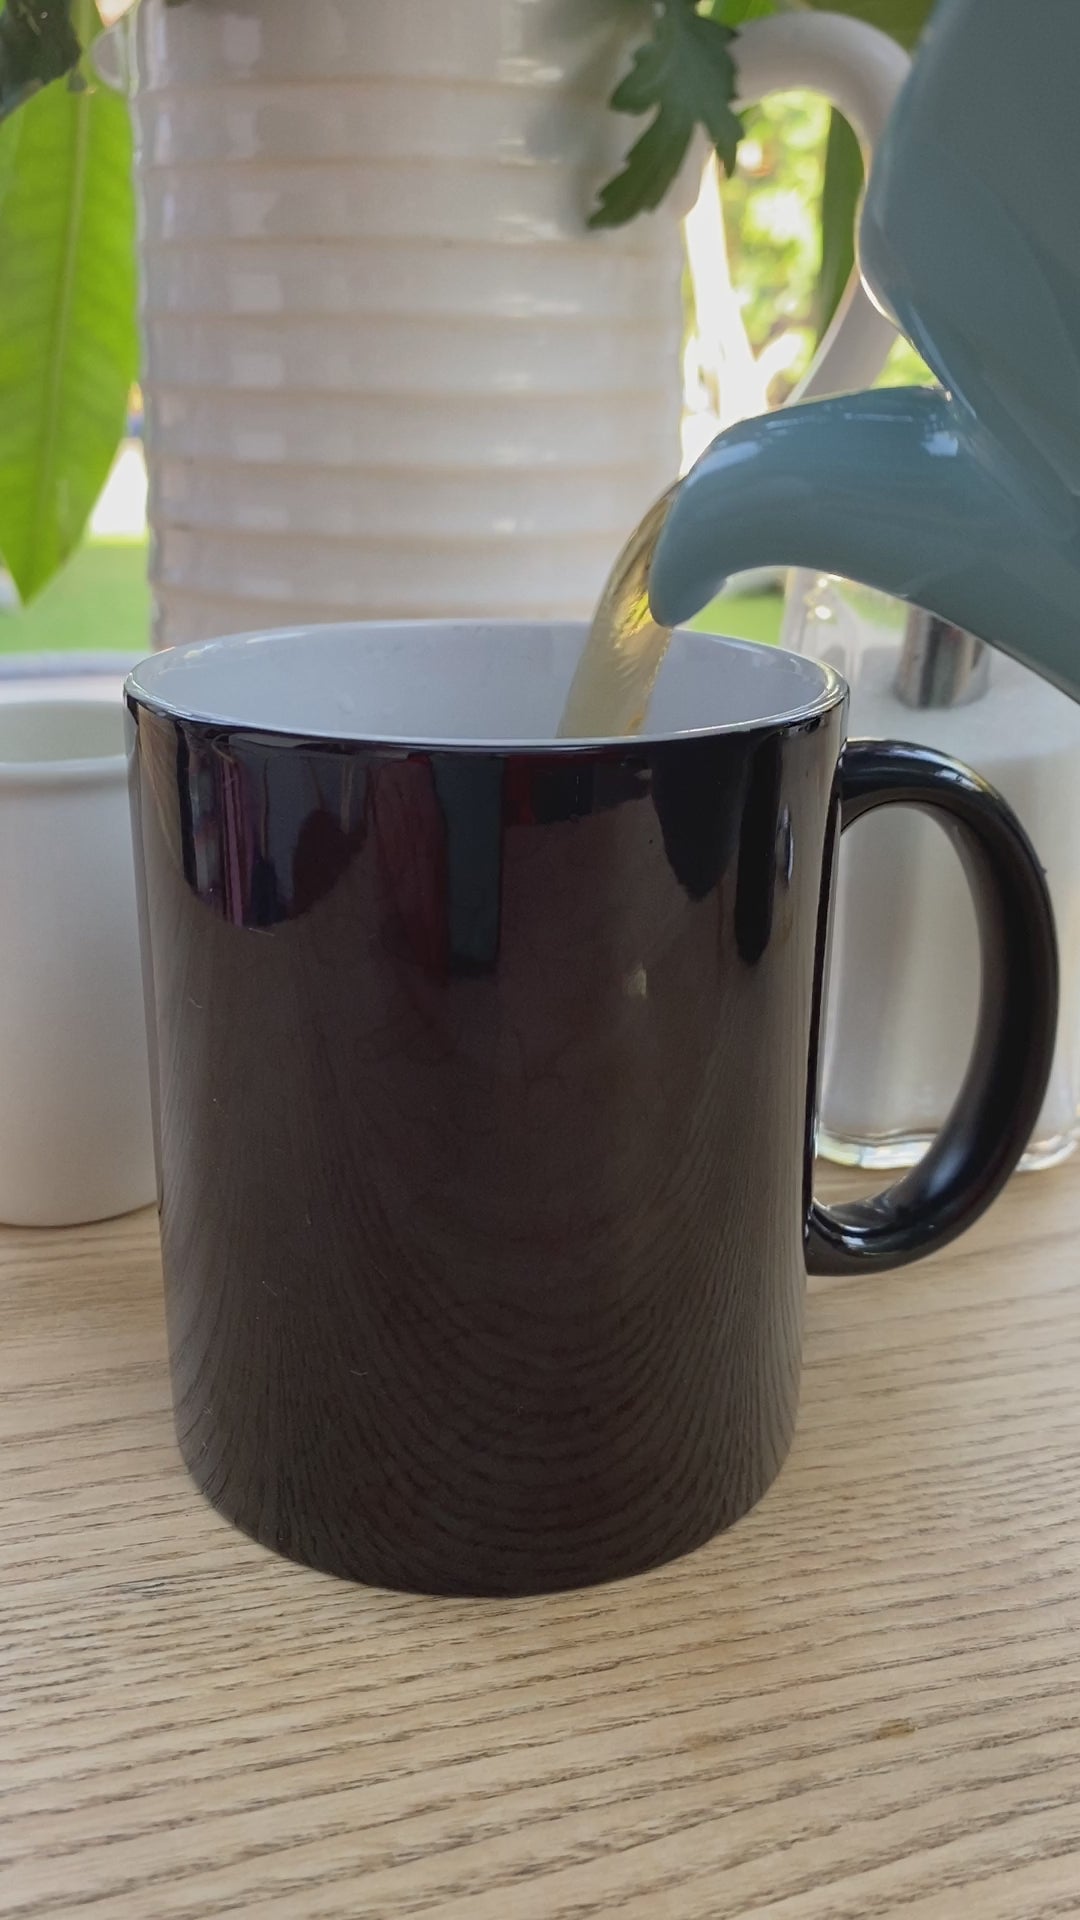 Magic Mug - with a secret 'Bunch of Dicks' design